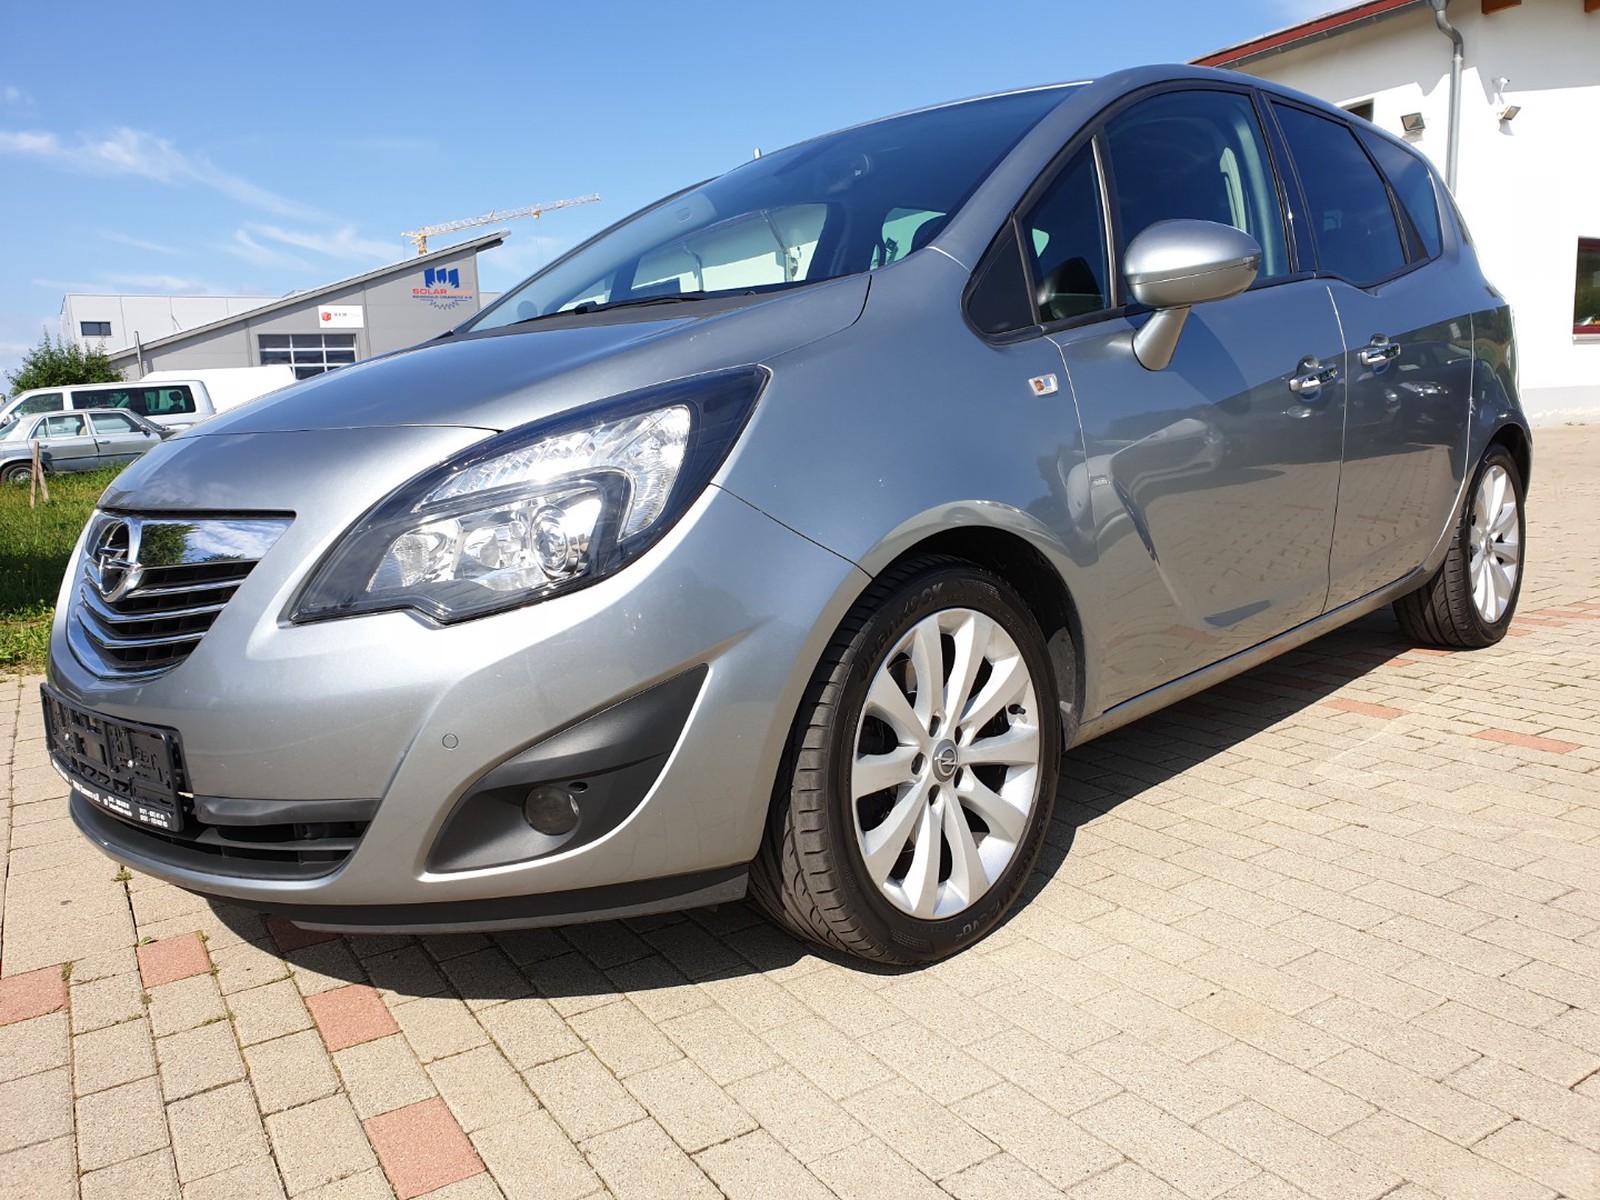 Opel Meriva B Innovation gebraucht kaufen in Zimmern ob Rottweil - Int.Nr.:  663 VERKAUFT